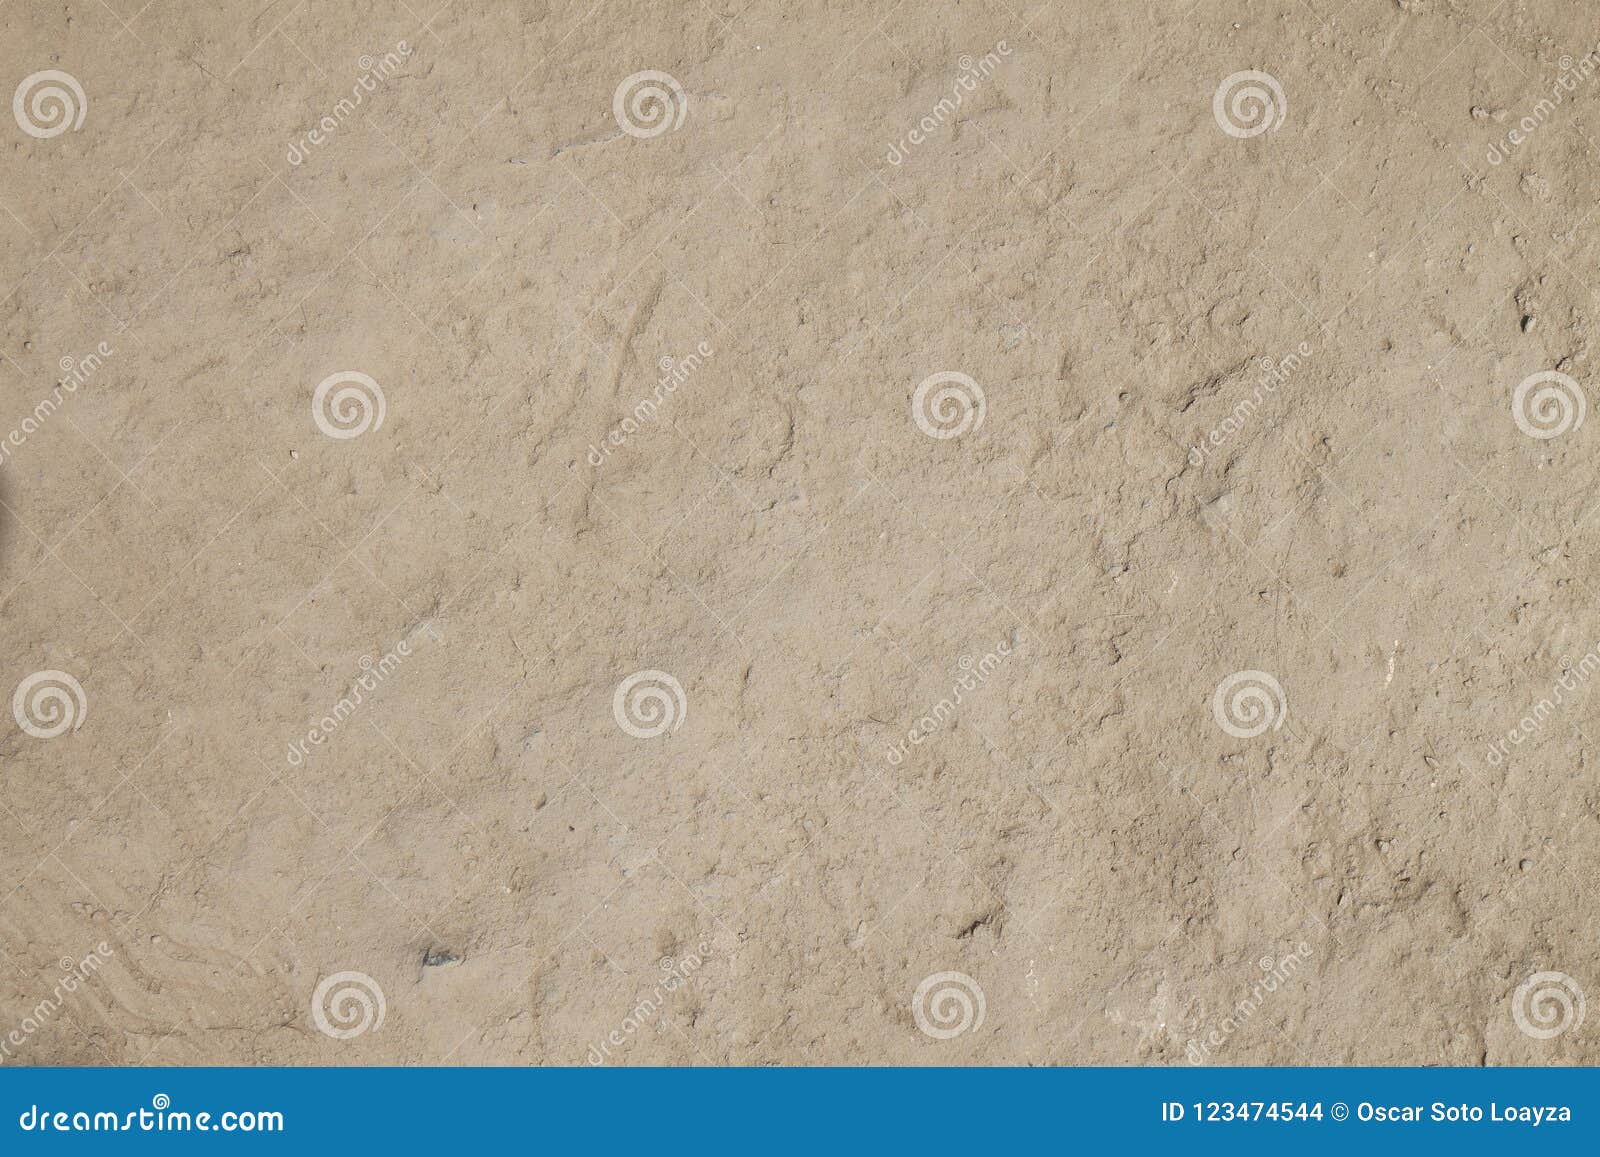 soil background. natural desert texture, textura de tierra